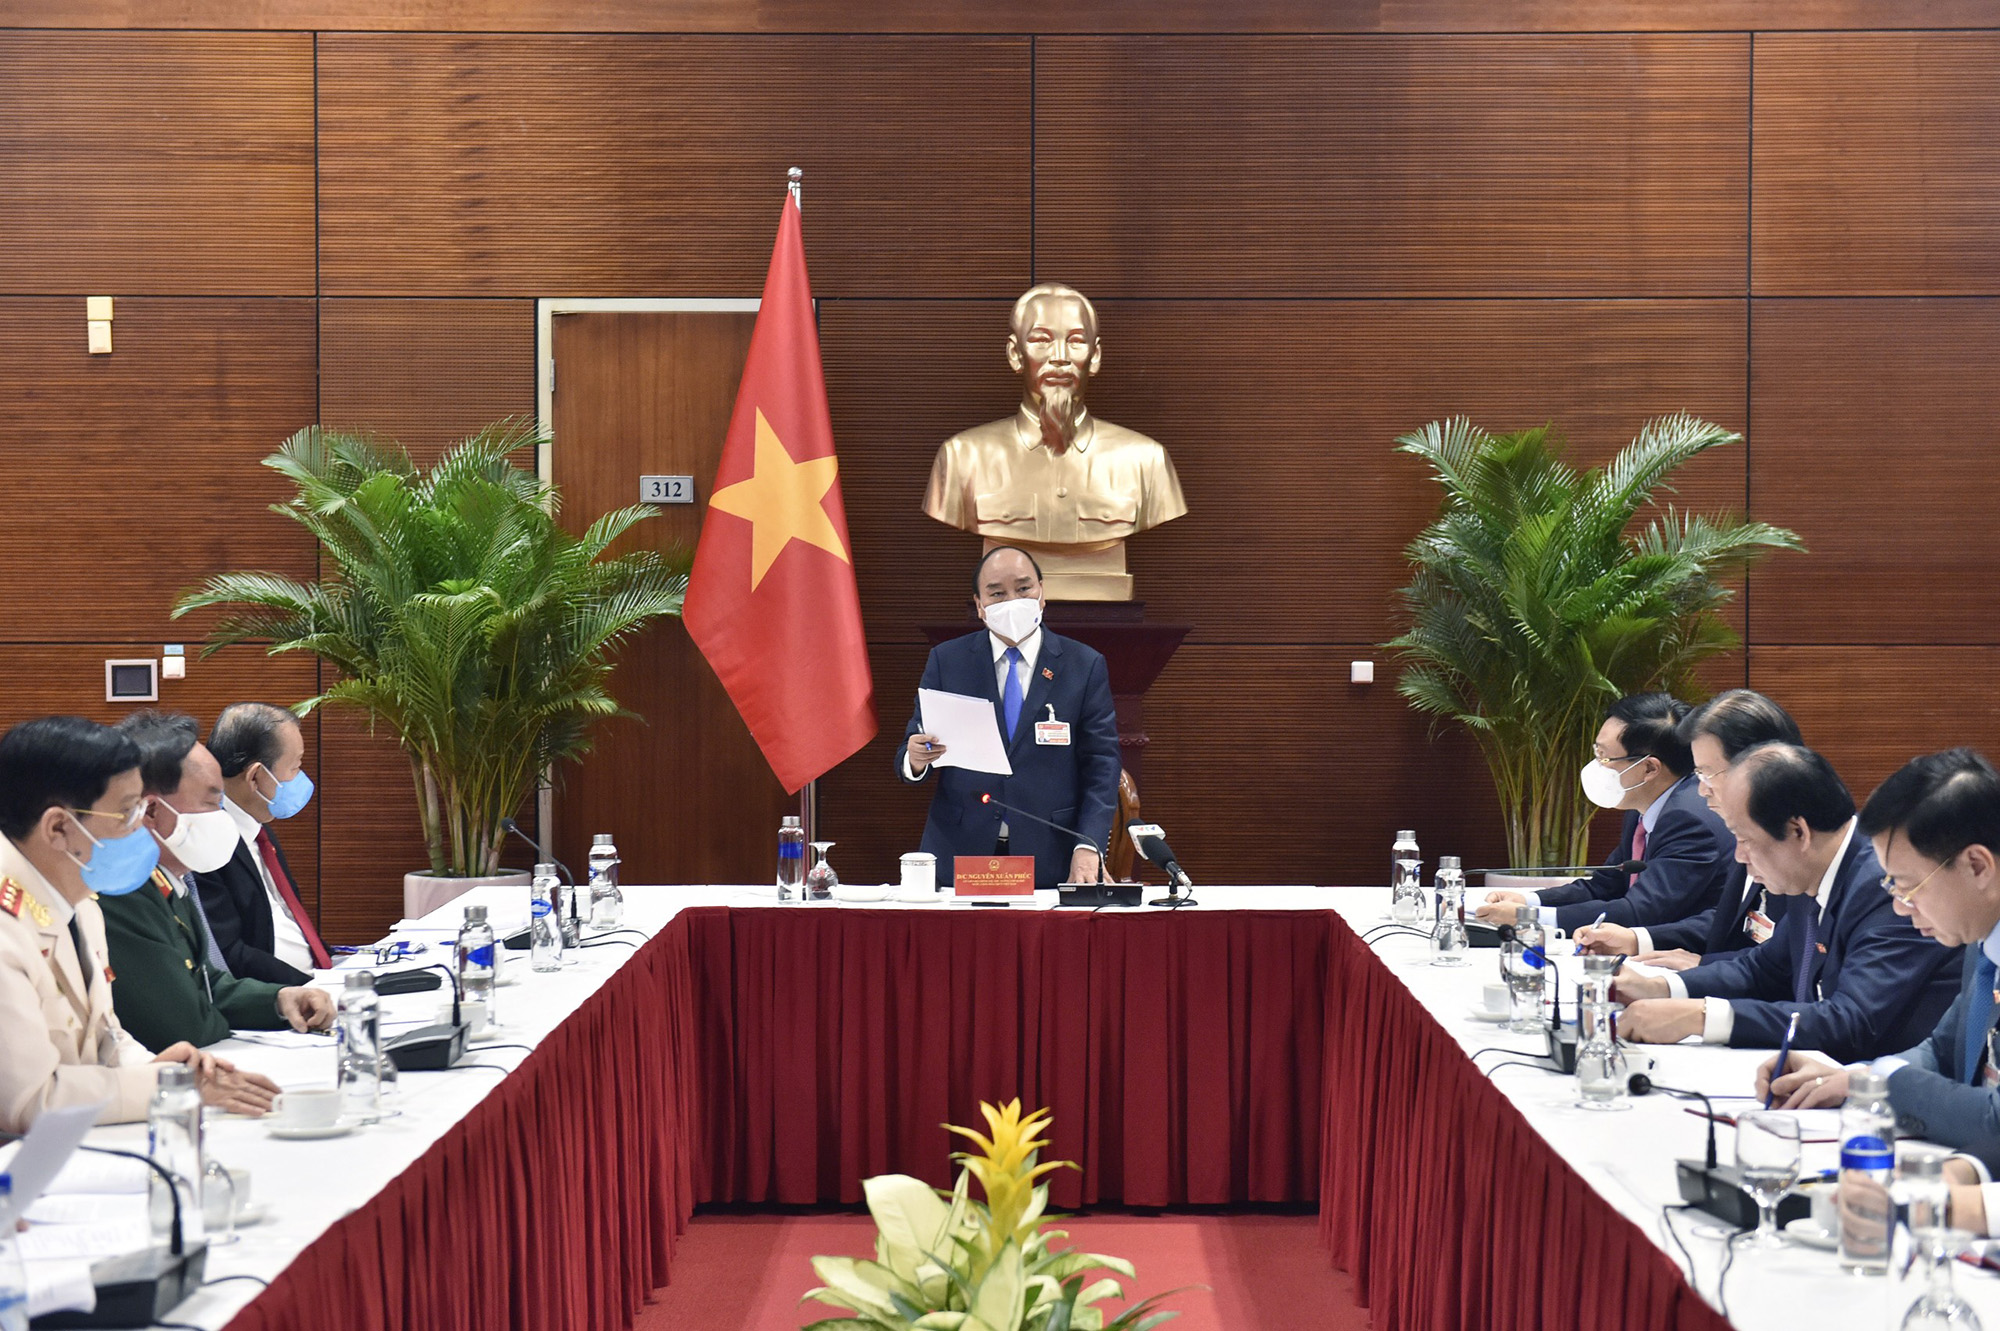 Thủ tướng Chính phủ Nguyễn Xuân Phúc phát biểu chỉ đạo tại cuộc họp khẩn sáng 28/1 về tình hình dịch Covid-19